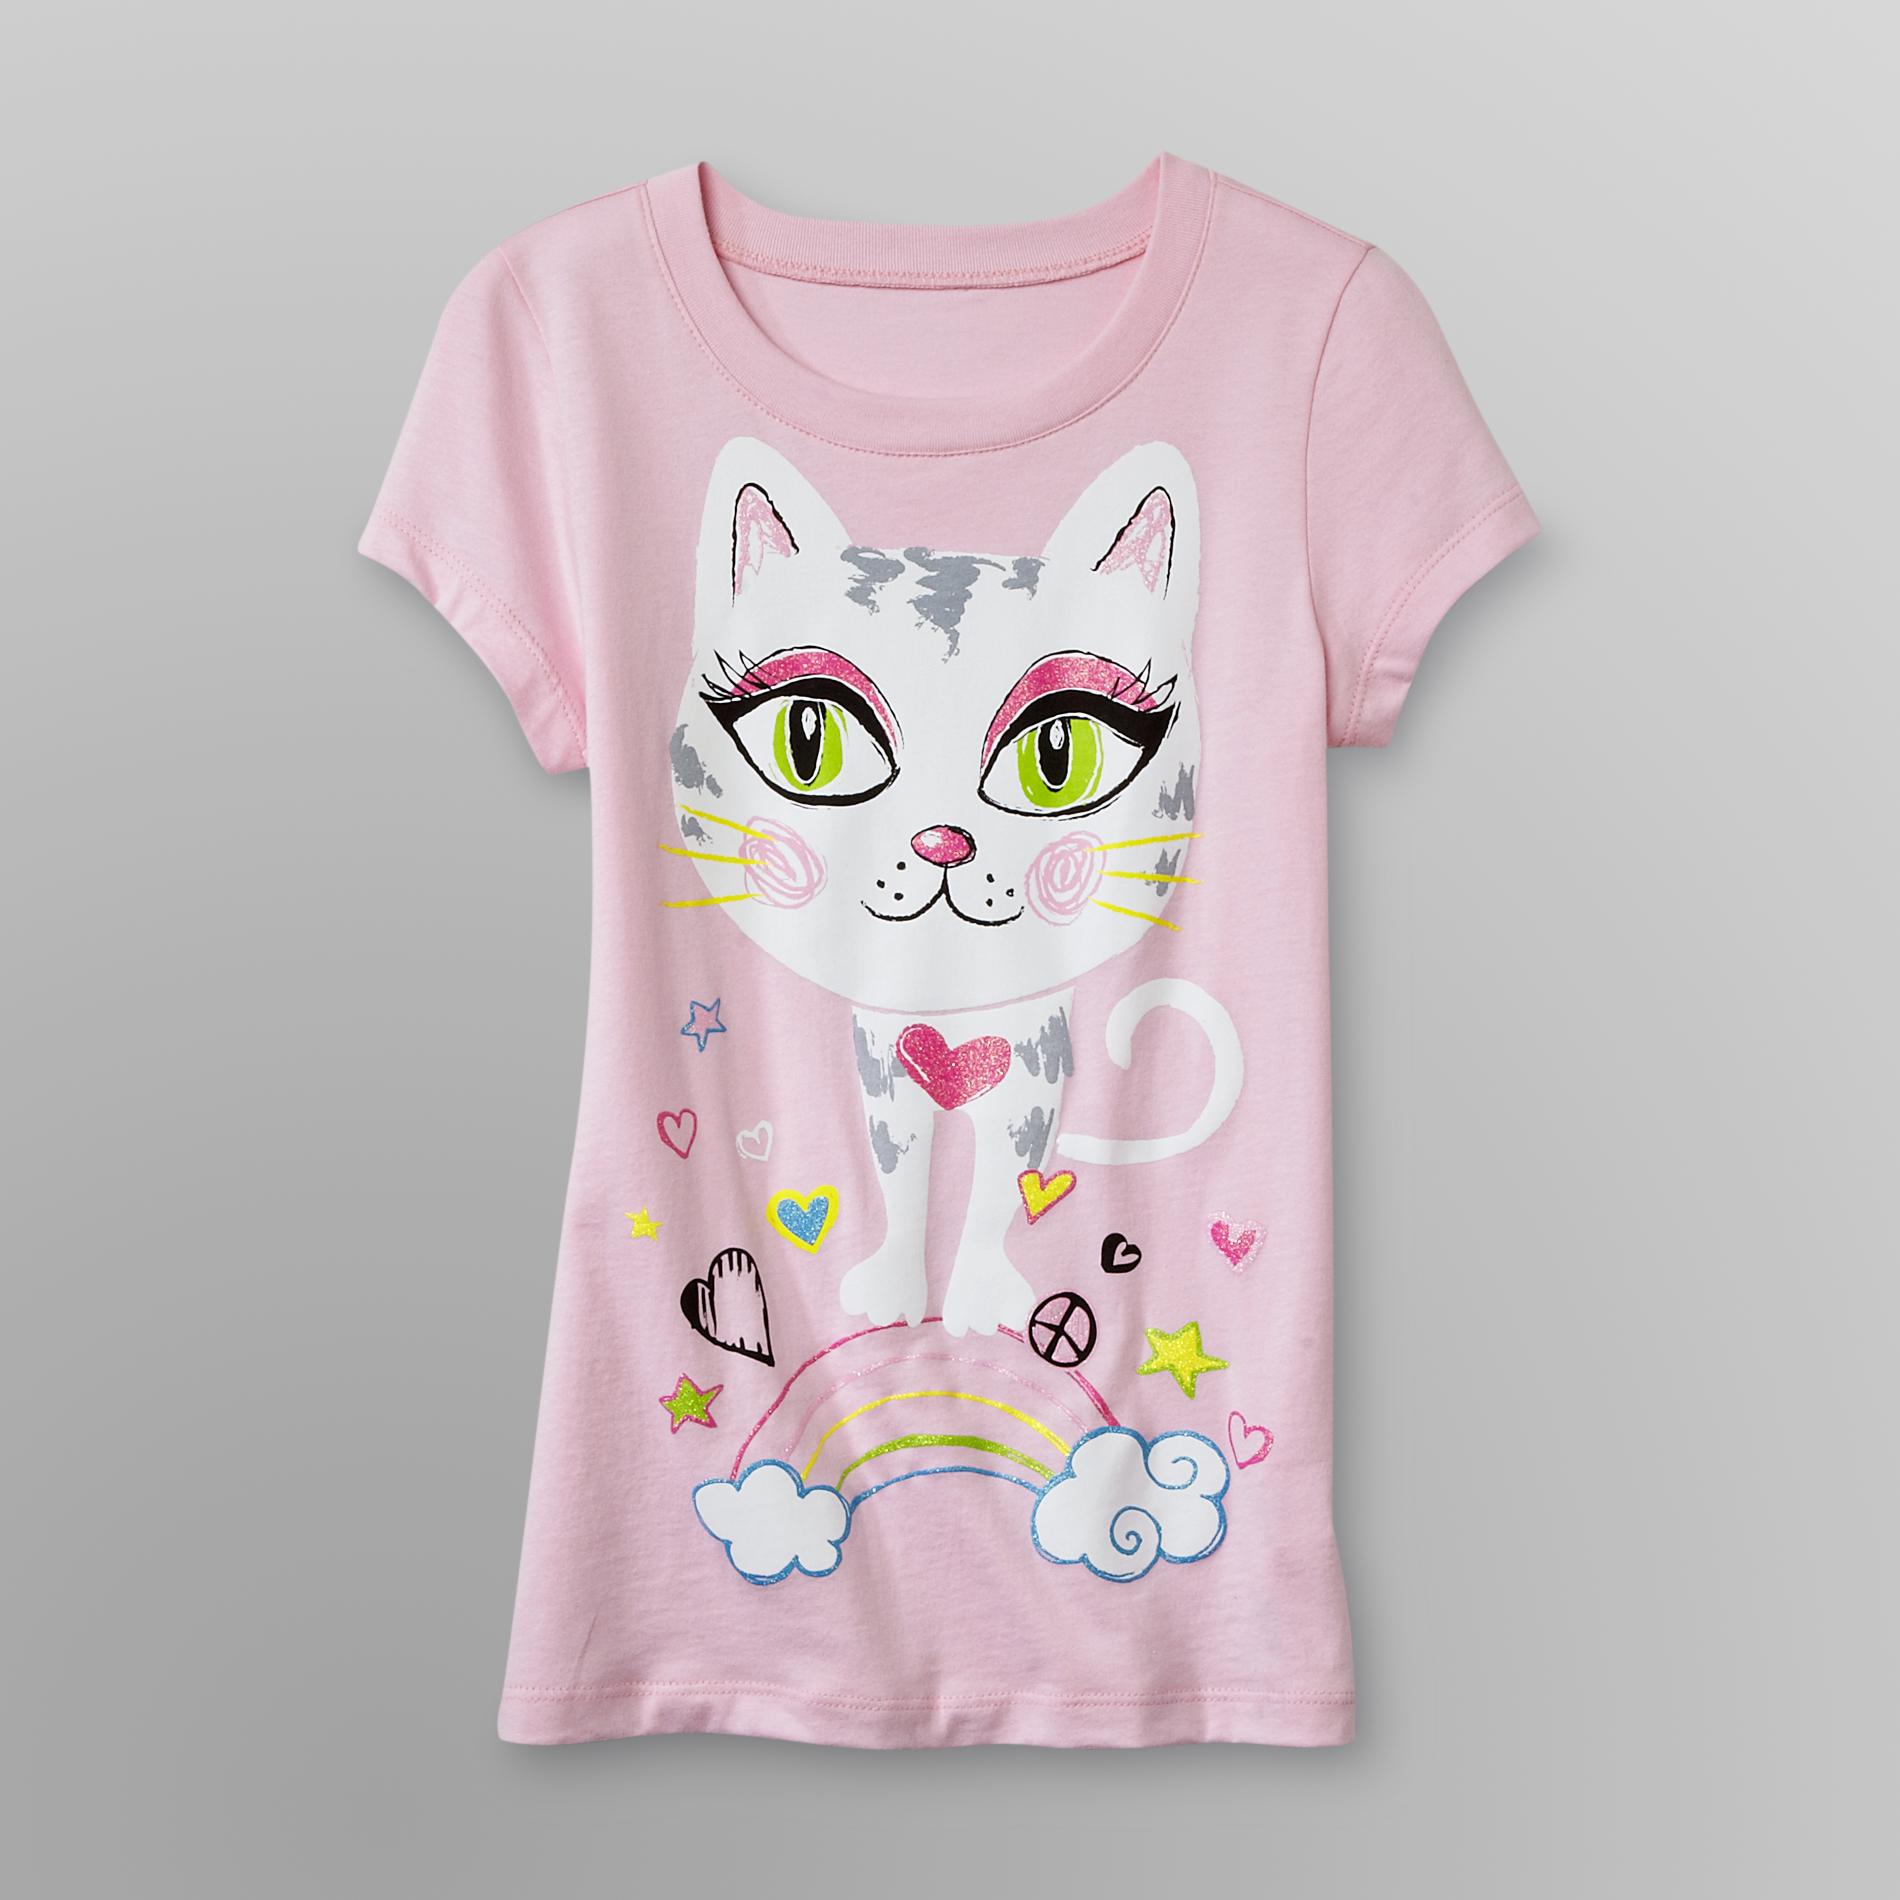 Route 66 Girl's Glitter T-Shirt - Cat